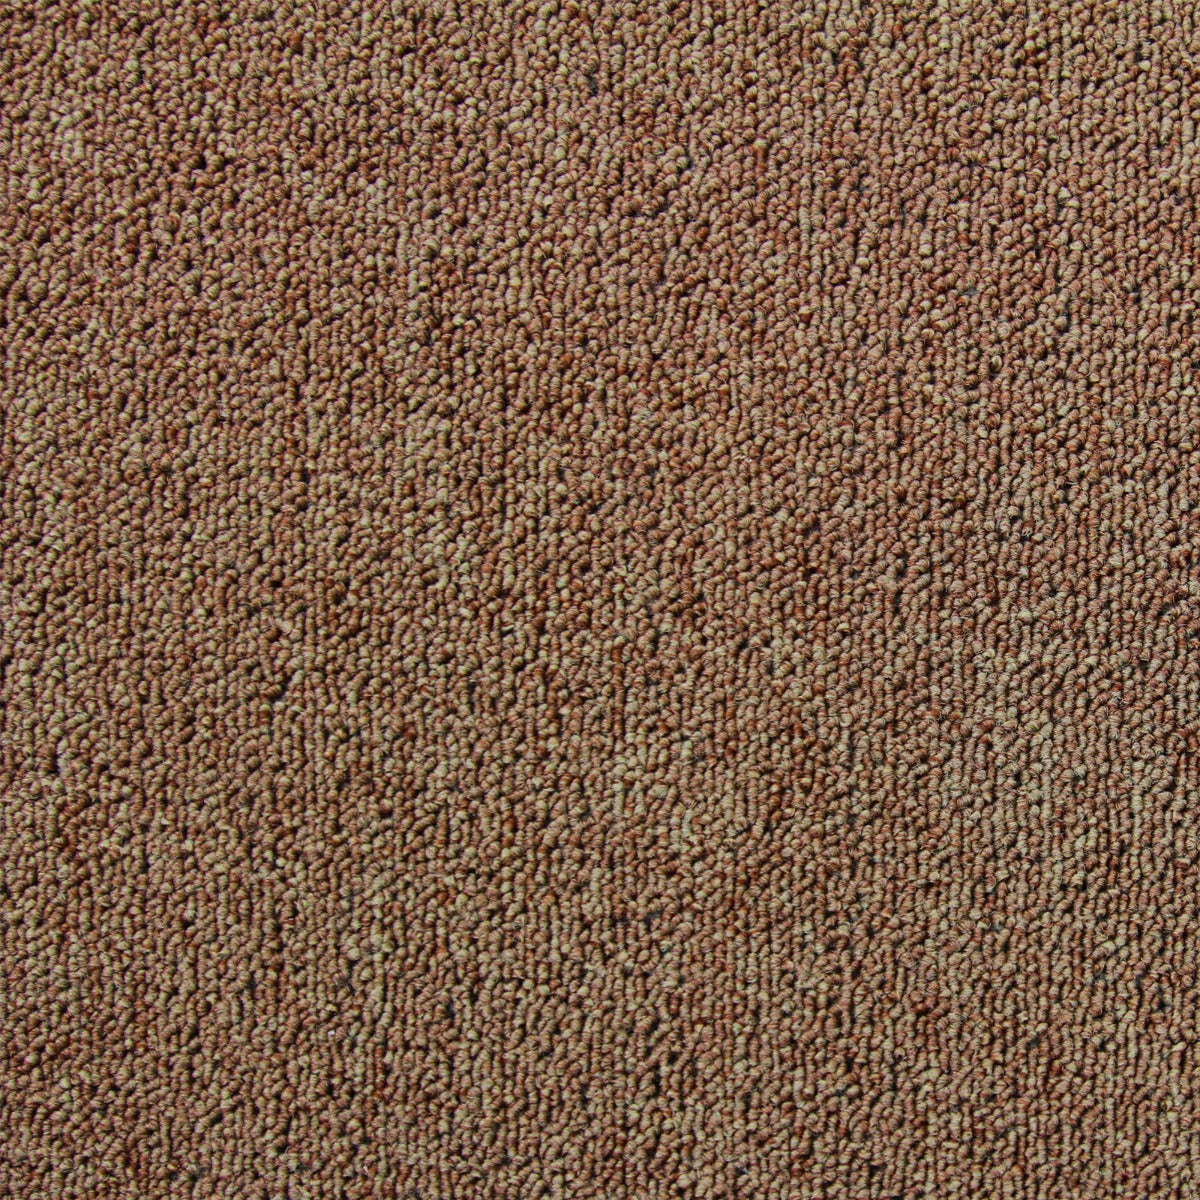 20 x Carpet Tiles 5m2 / Beige